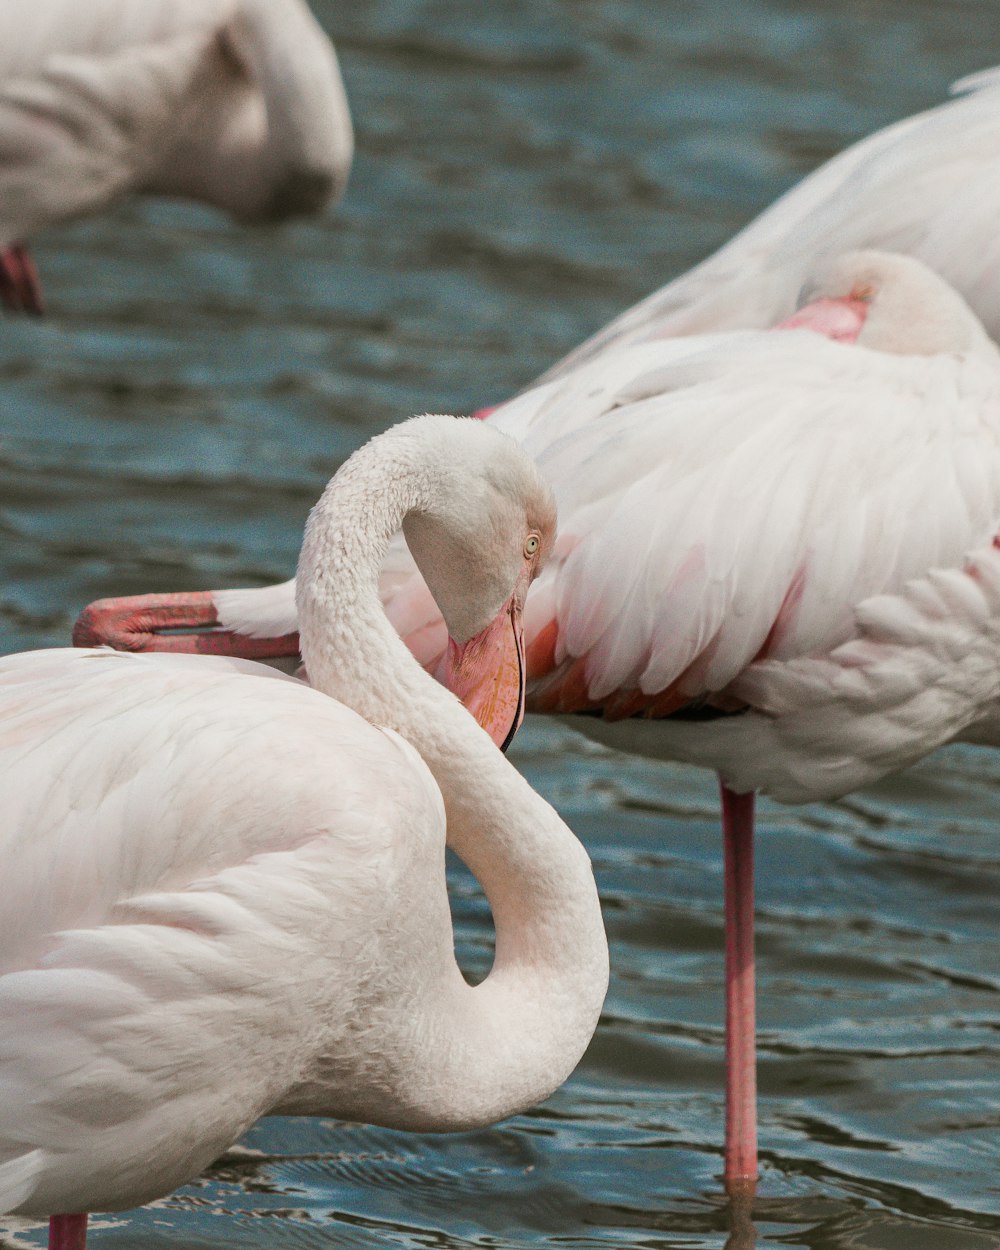 white flamingos on water during daytime